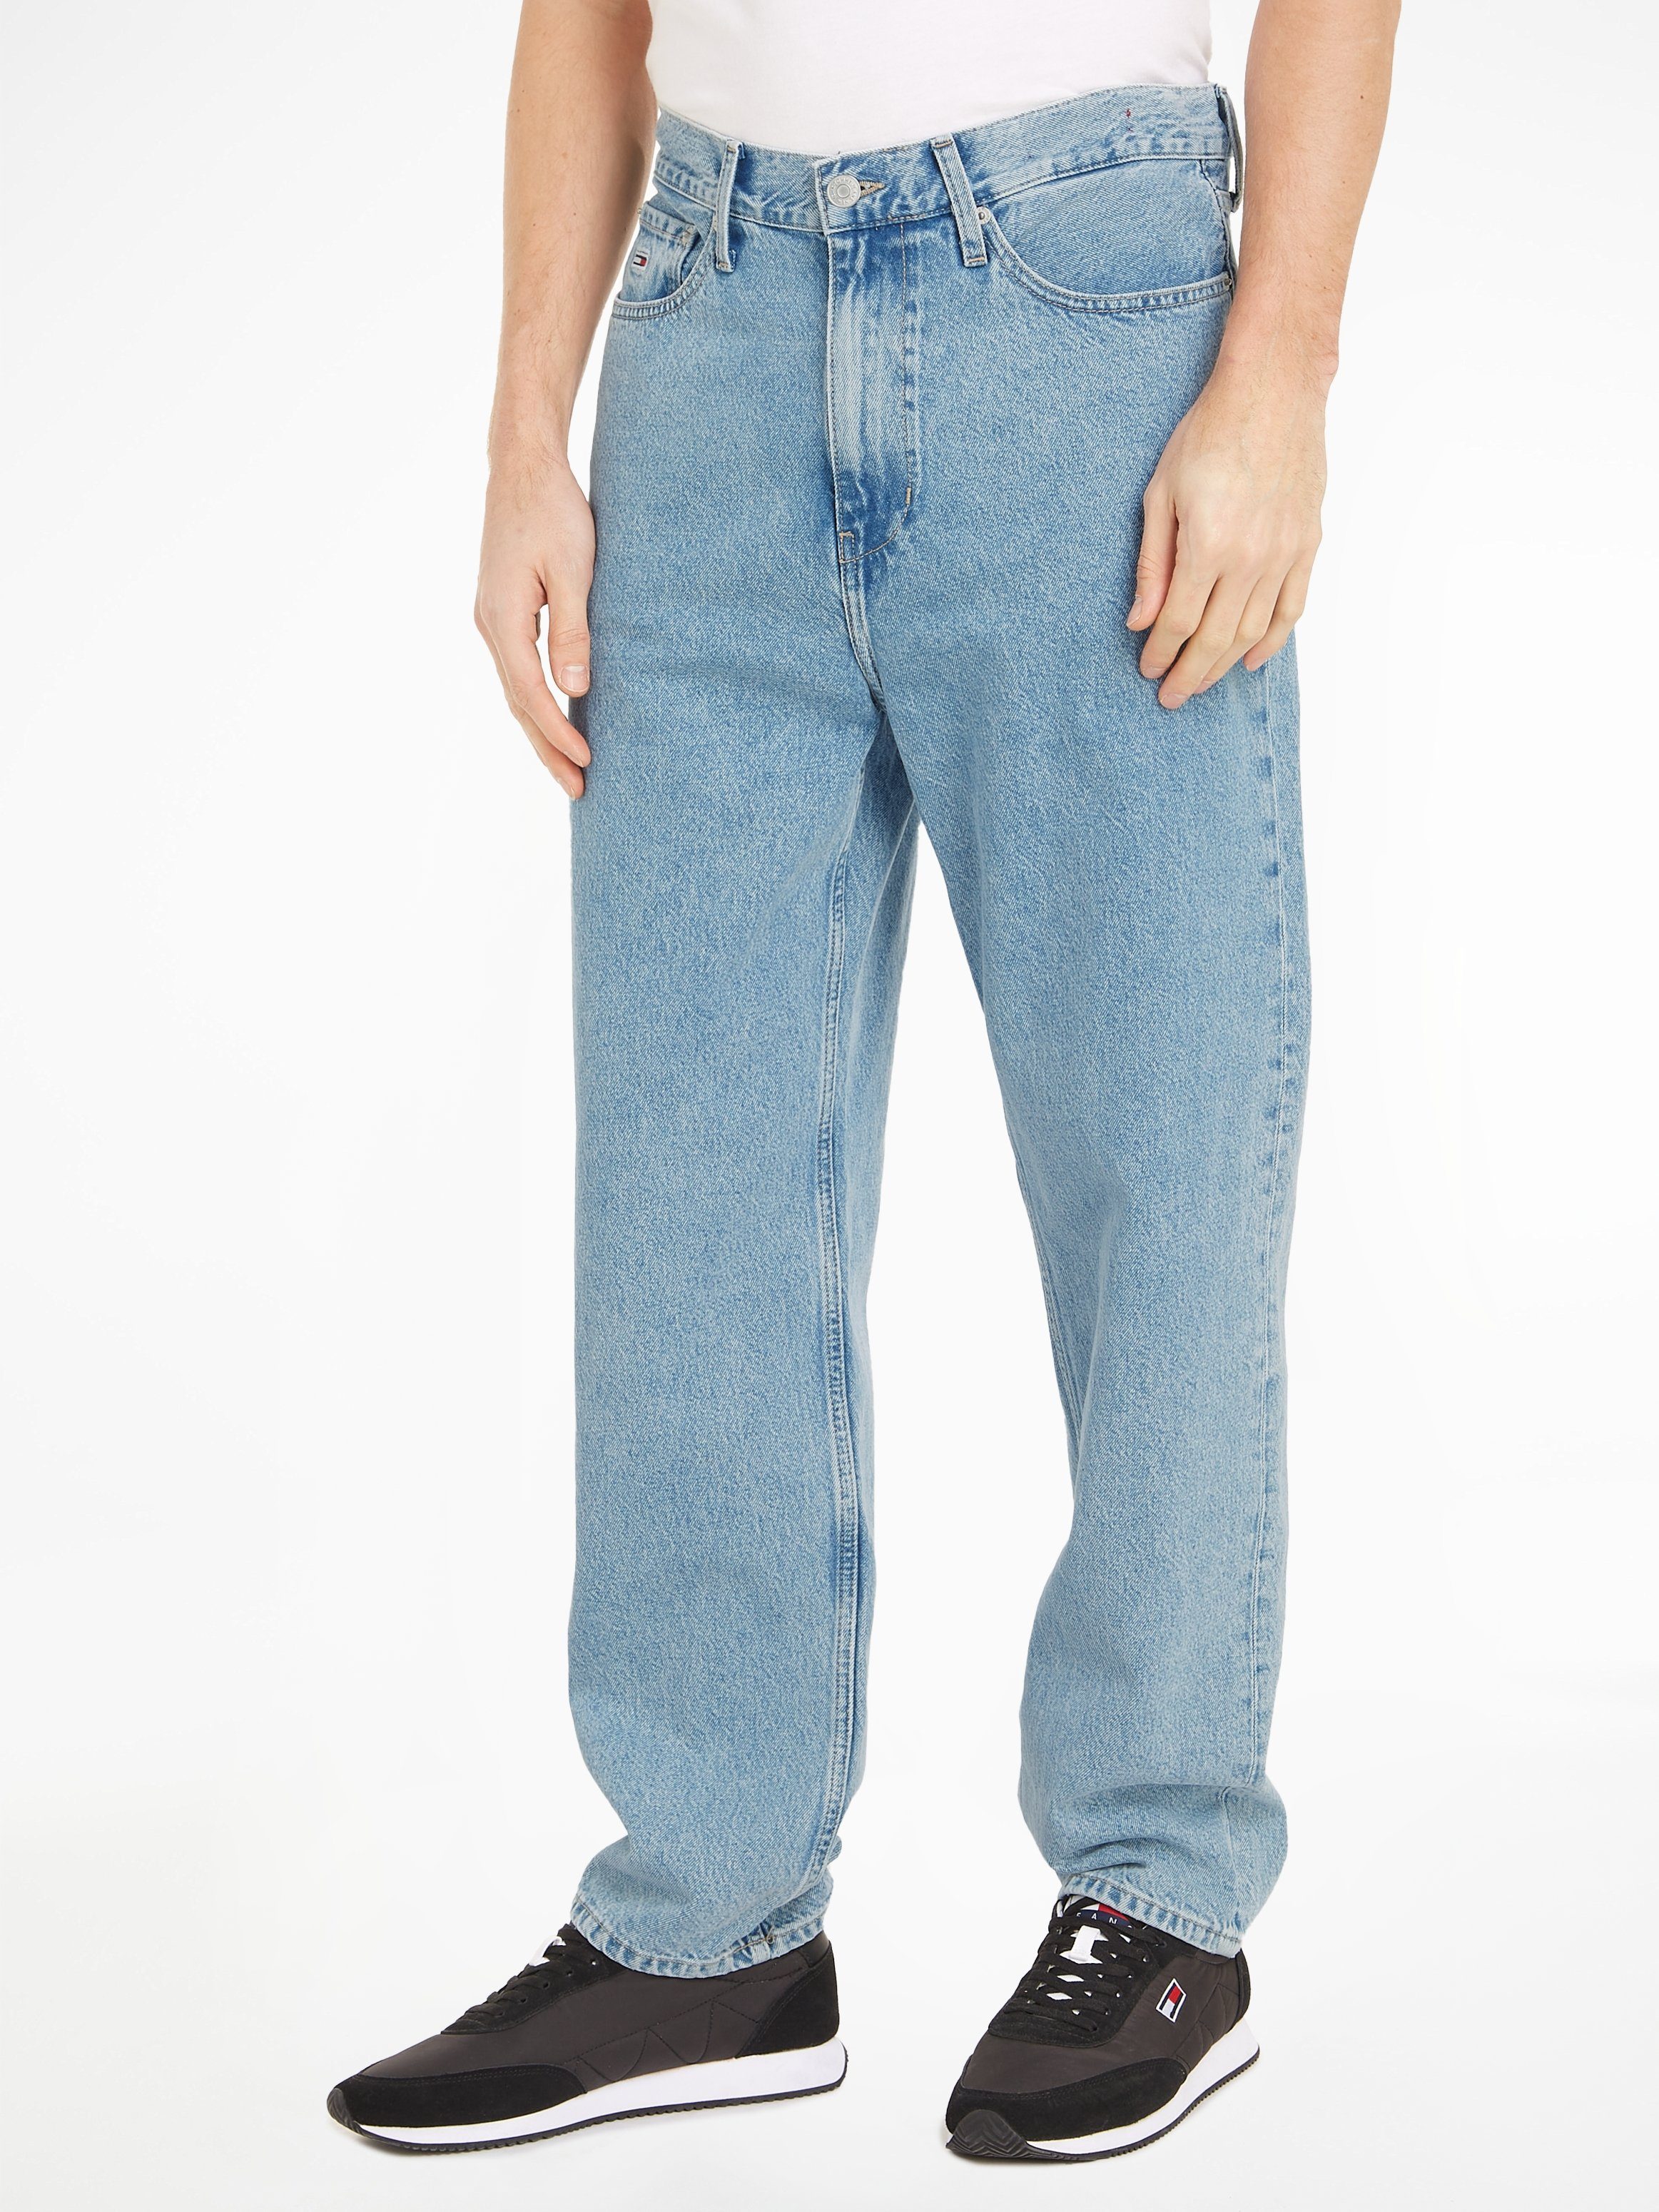 TOMMY JEANS 5-pocket jeans SKATER JEAN CG4014